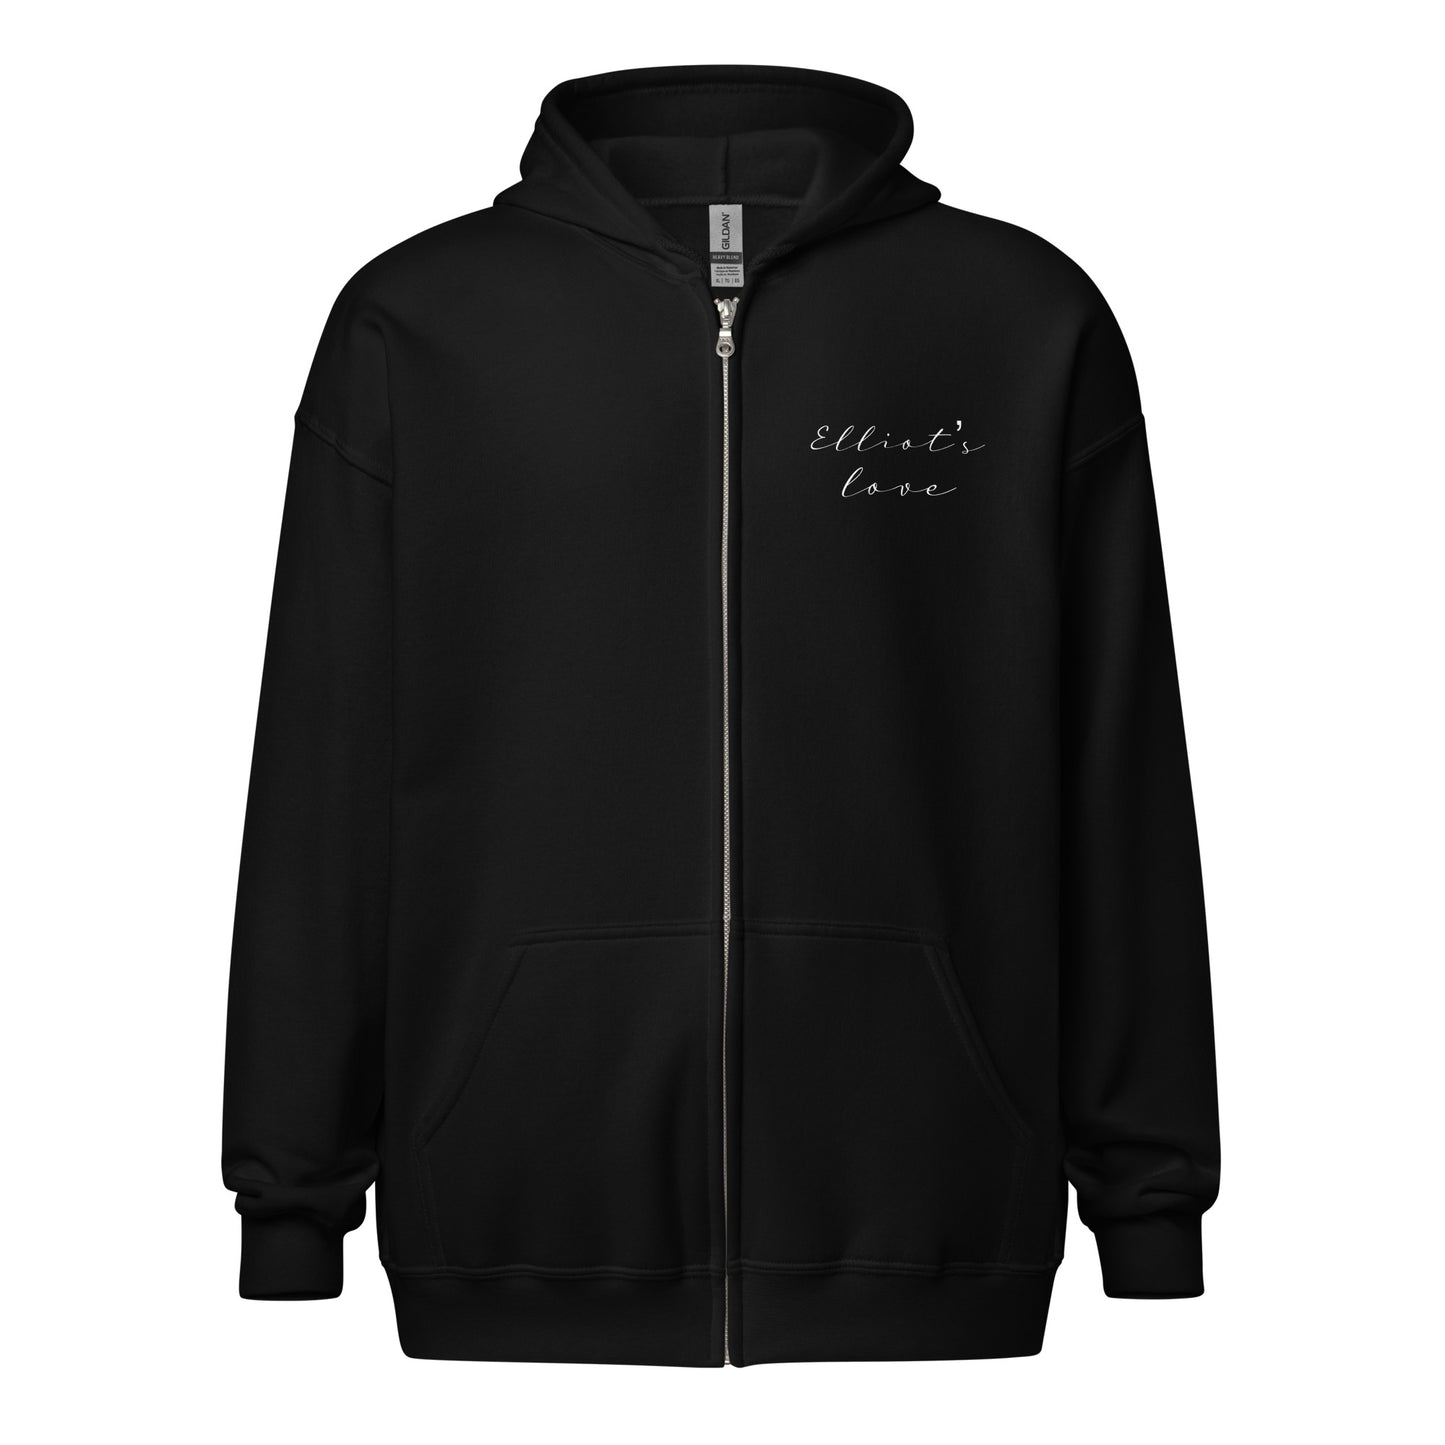 Elliot's Love zip hoodie